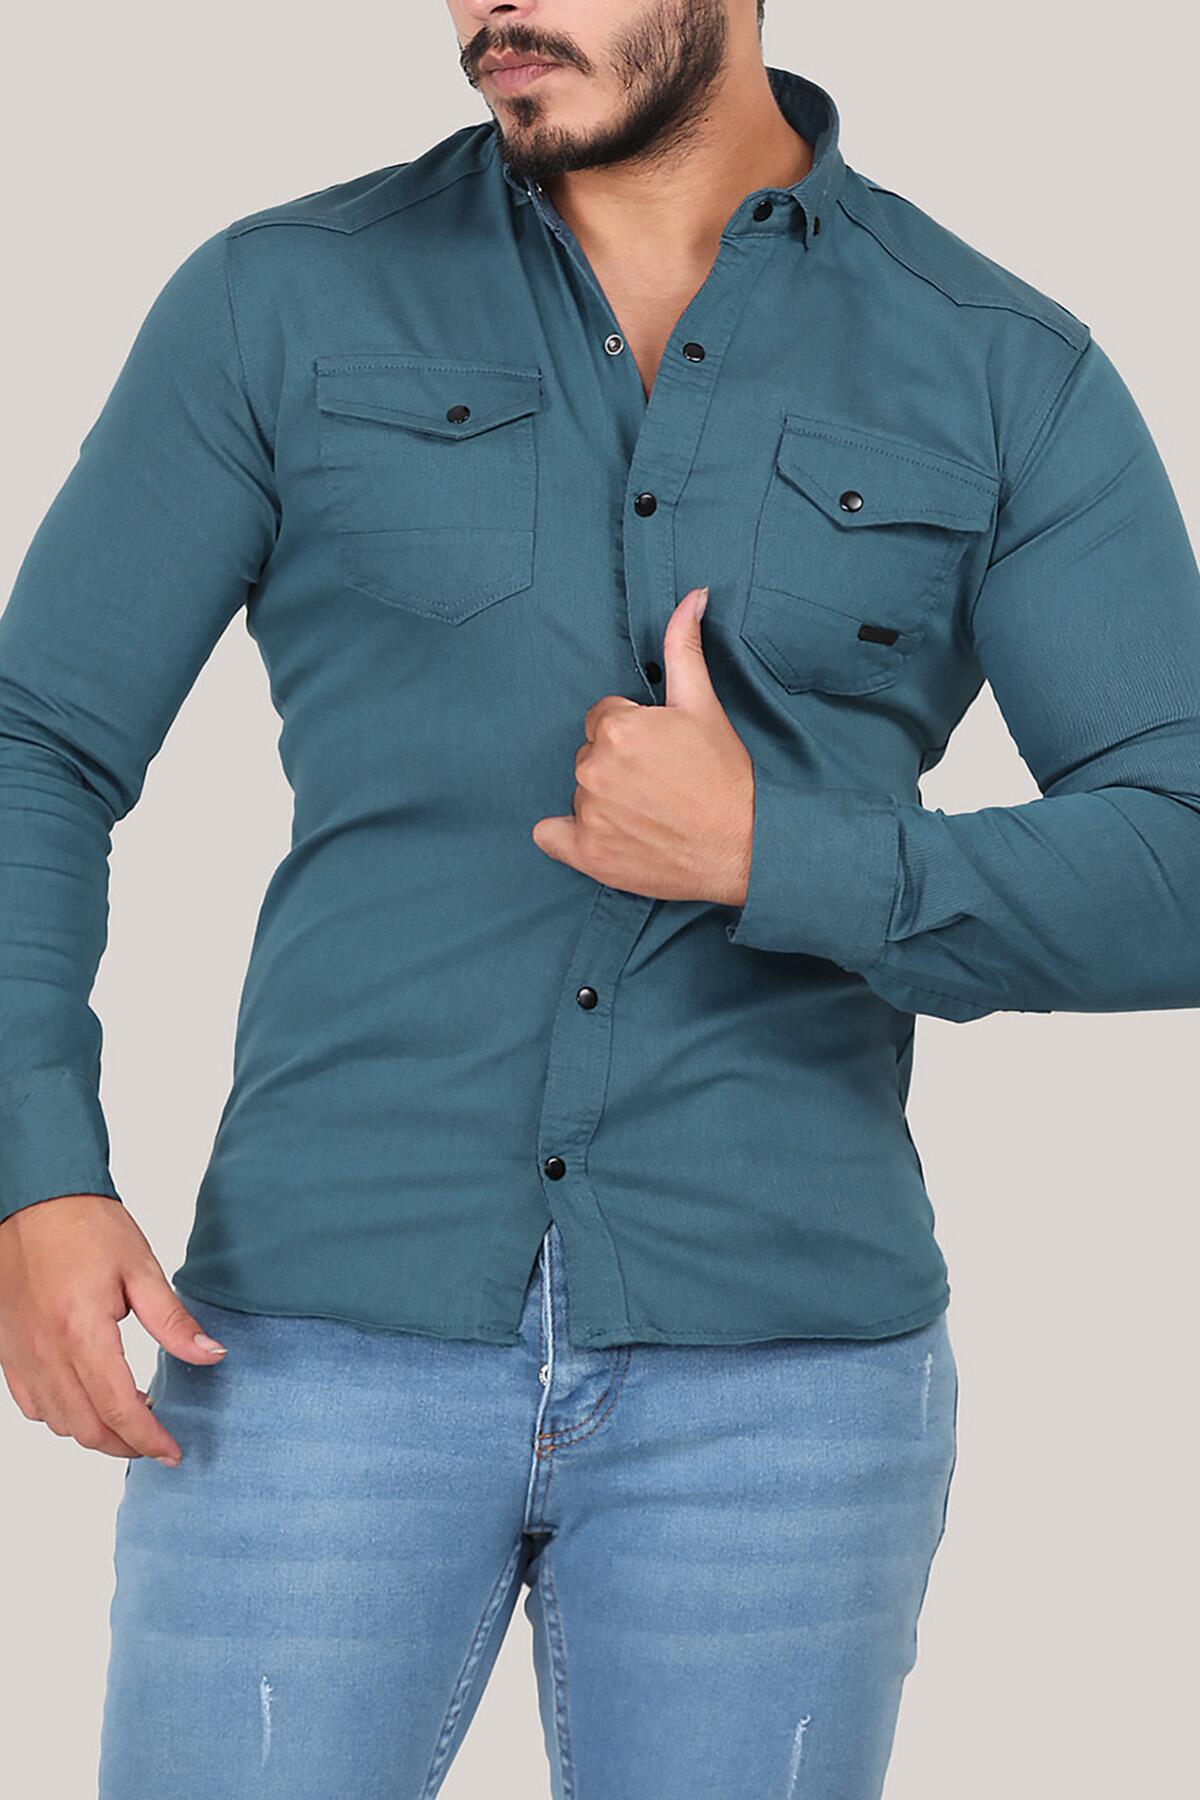 Erkek Uzun Kol Cepli Gömlek Petrol Petrol Yeşili | Patırtı